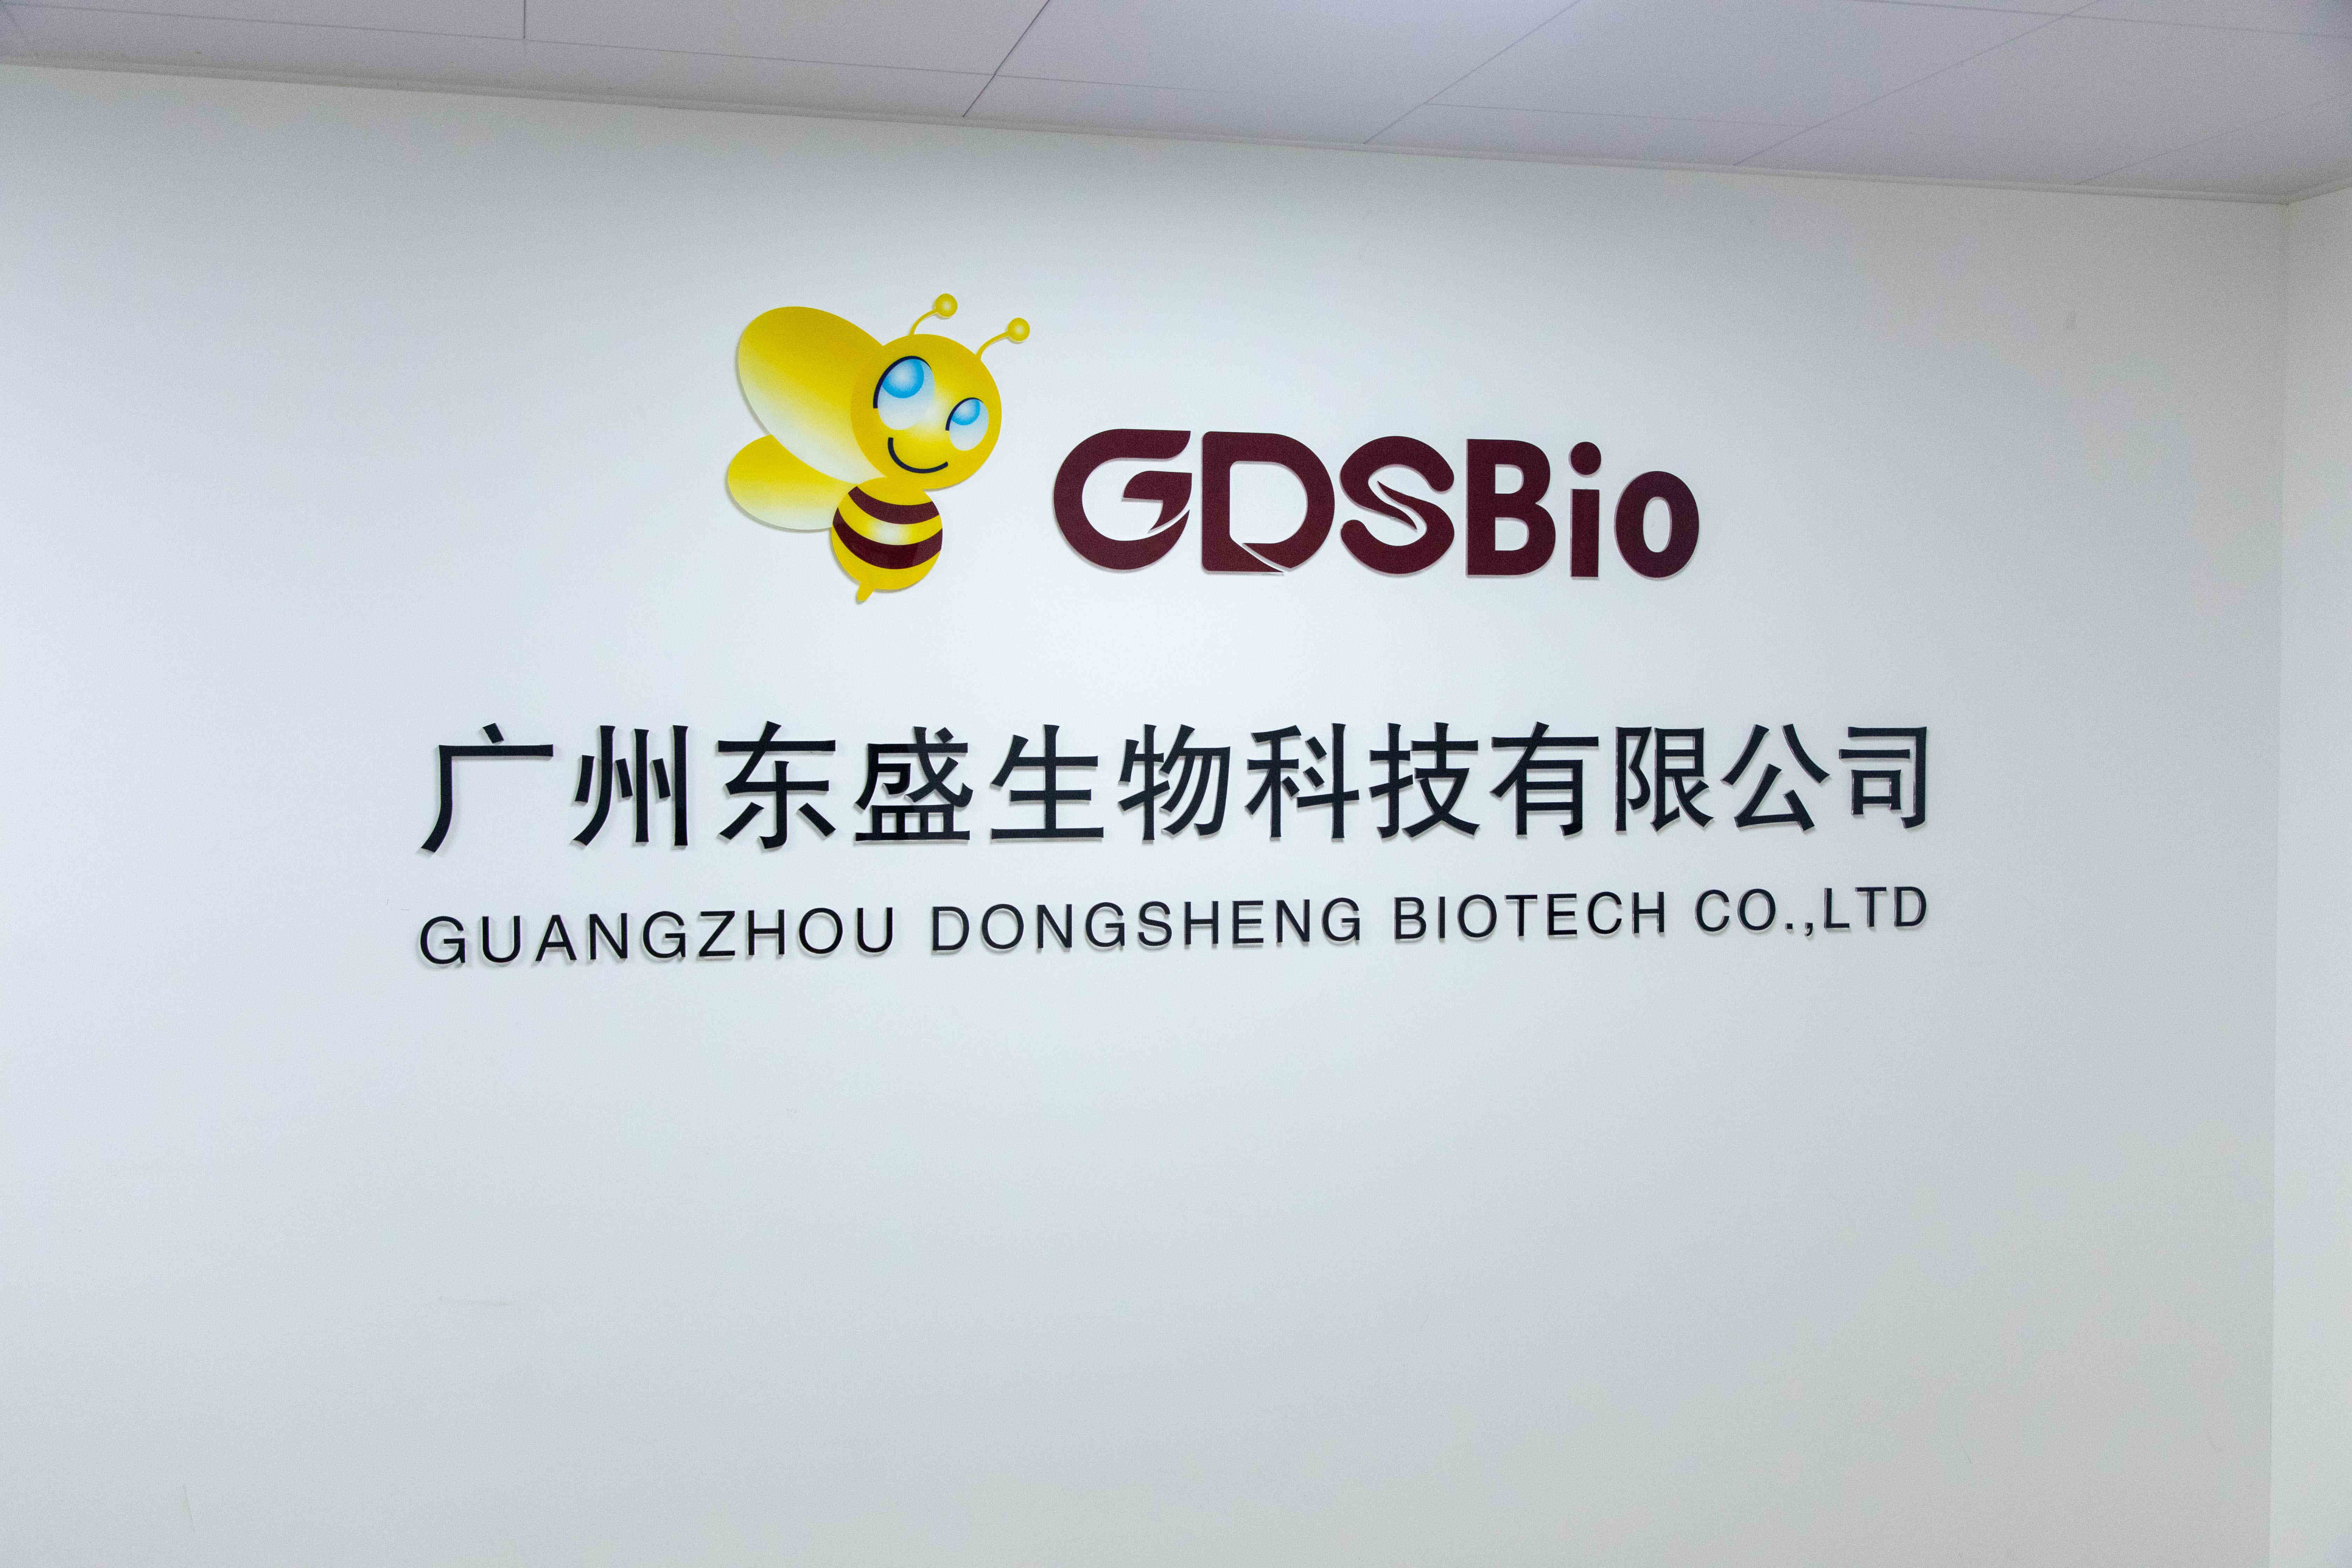 ΚΙΝΑ Guangzhou Dongsheng Biotech Co., Ltd Εταιρικό Προφίλ